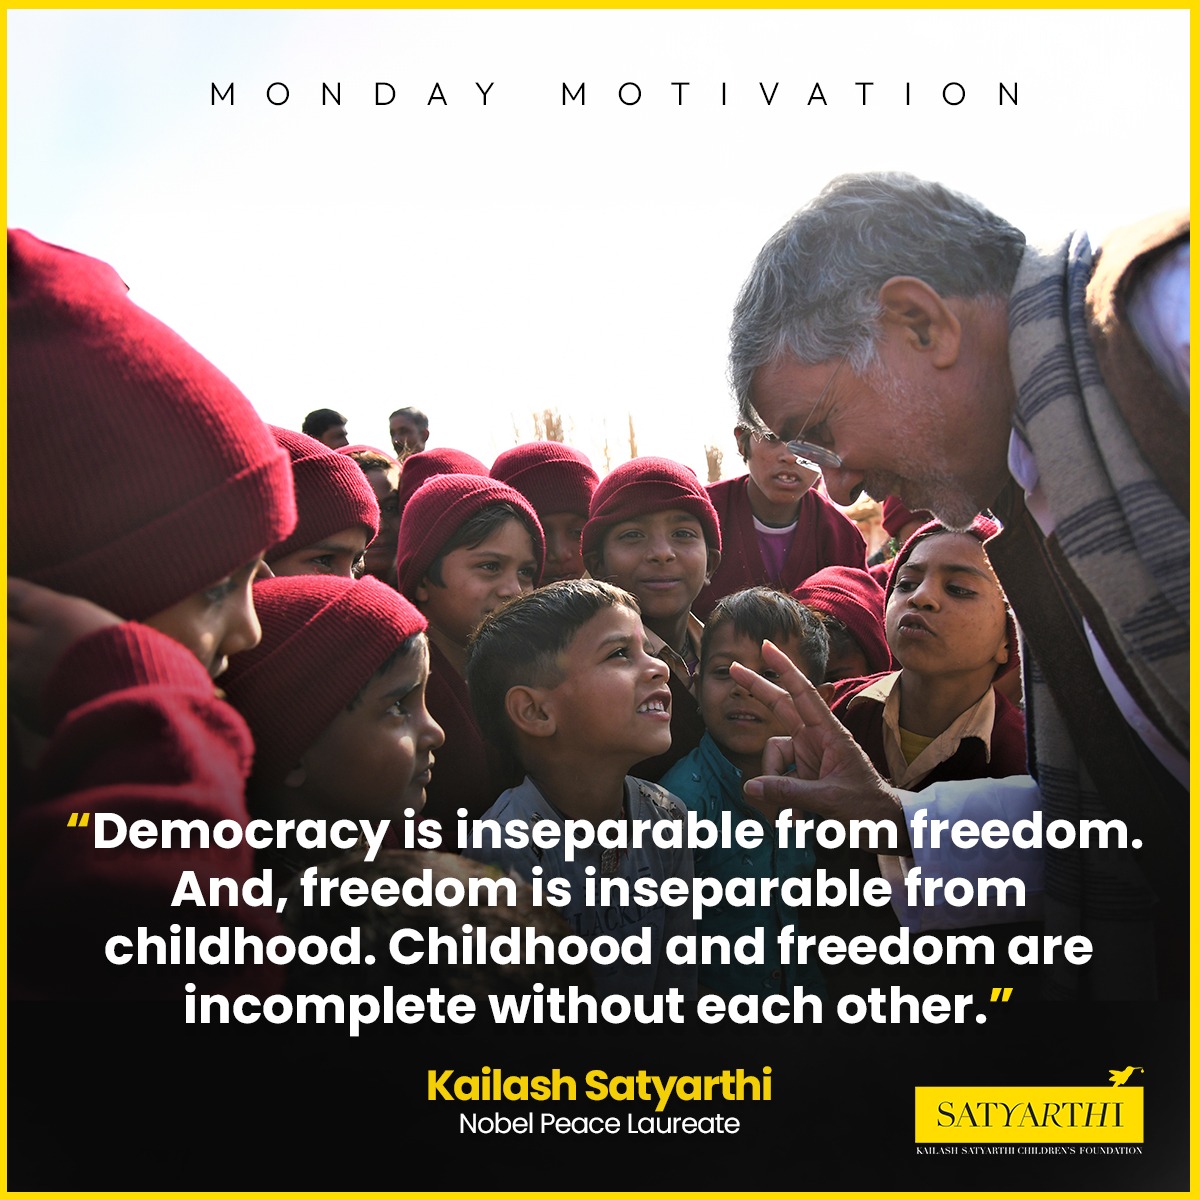 💯🙏
#Kailashsatyarthi #KailashSatyarthiChildrensFoundation #KSCF #MondayMotivation #Democracy #Children #everychildmatters